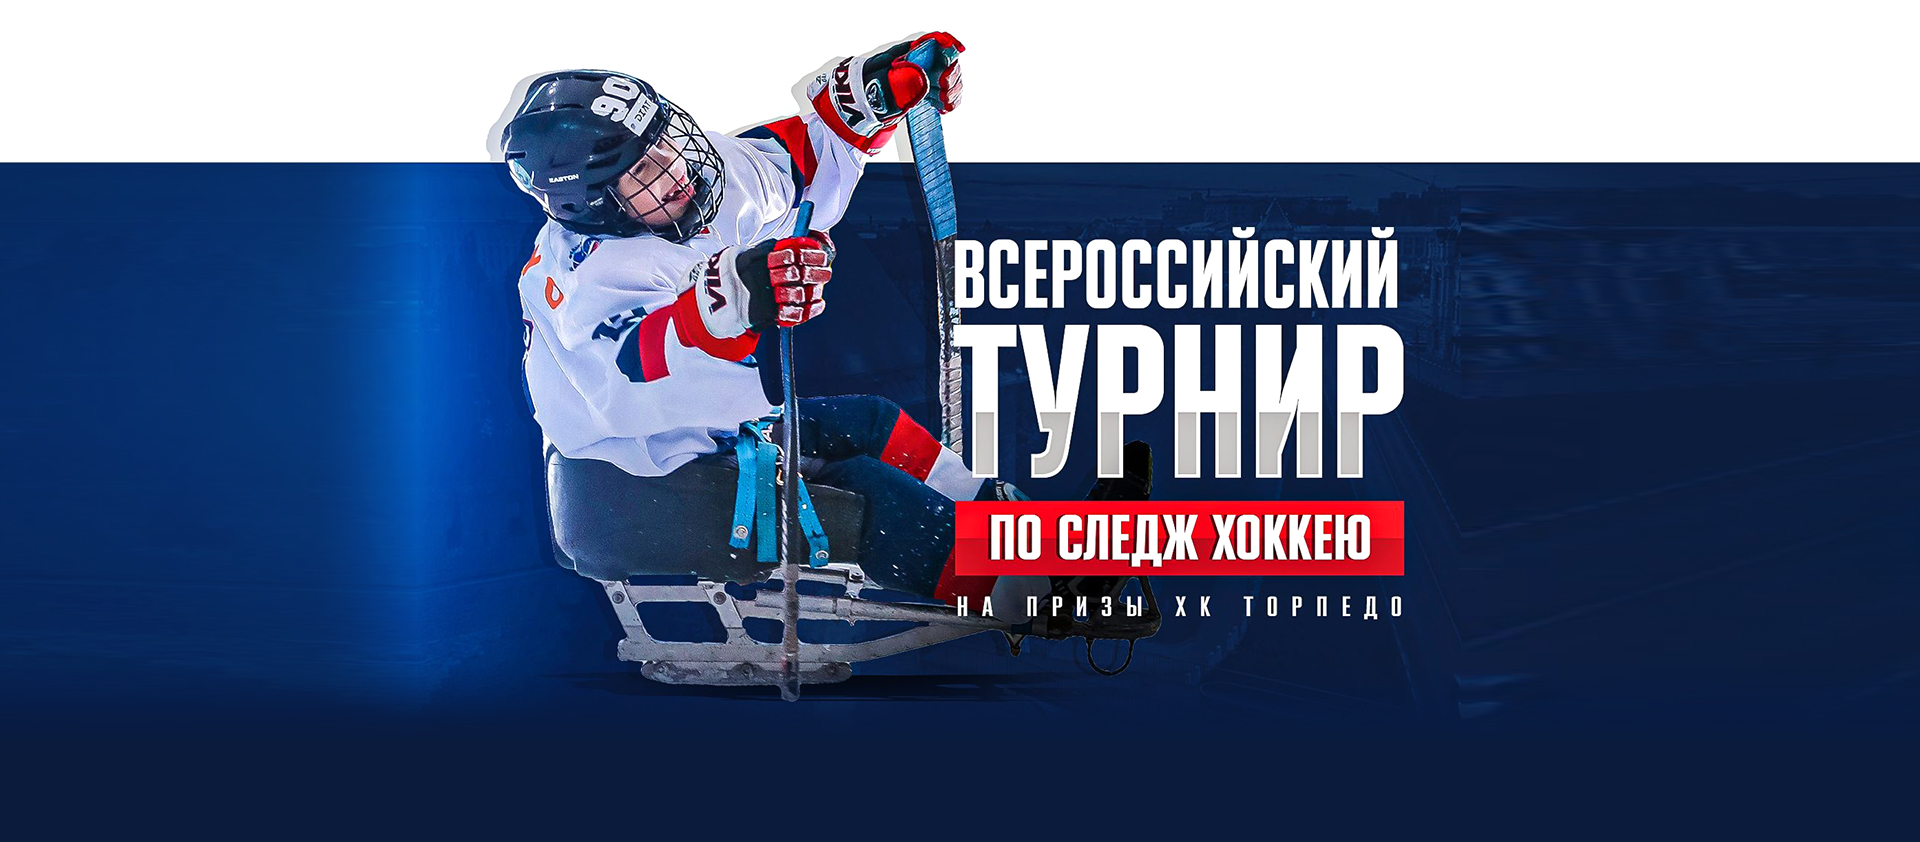 Праздник следж-хоккея пройдёт в Нижнем Новгороде